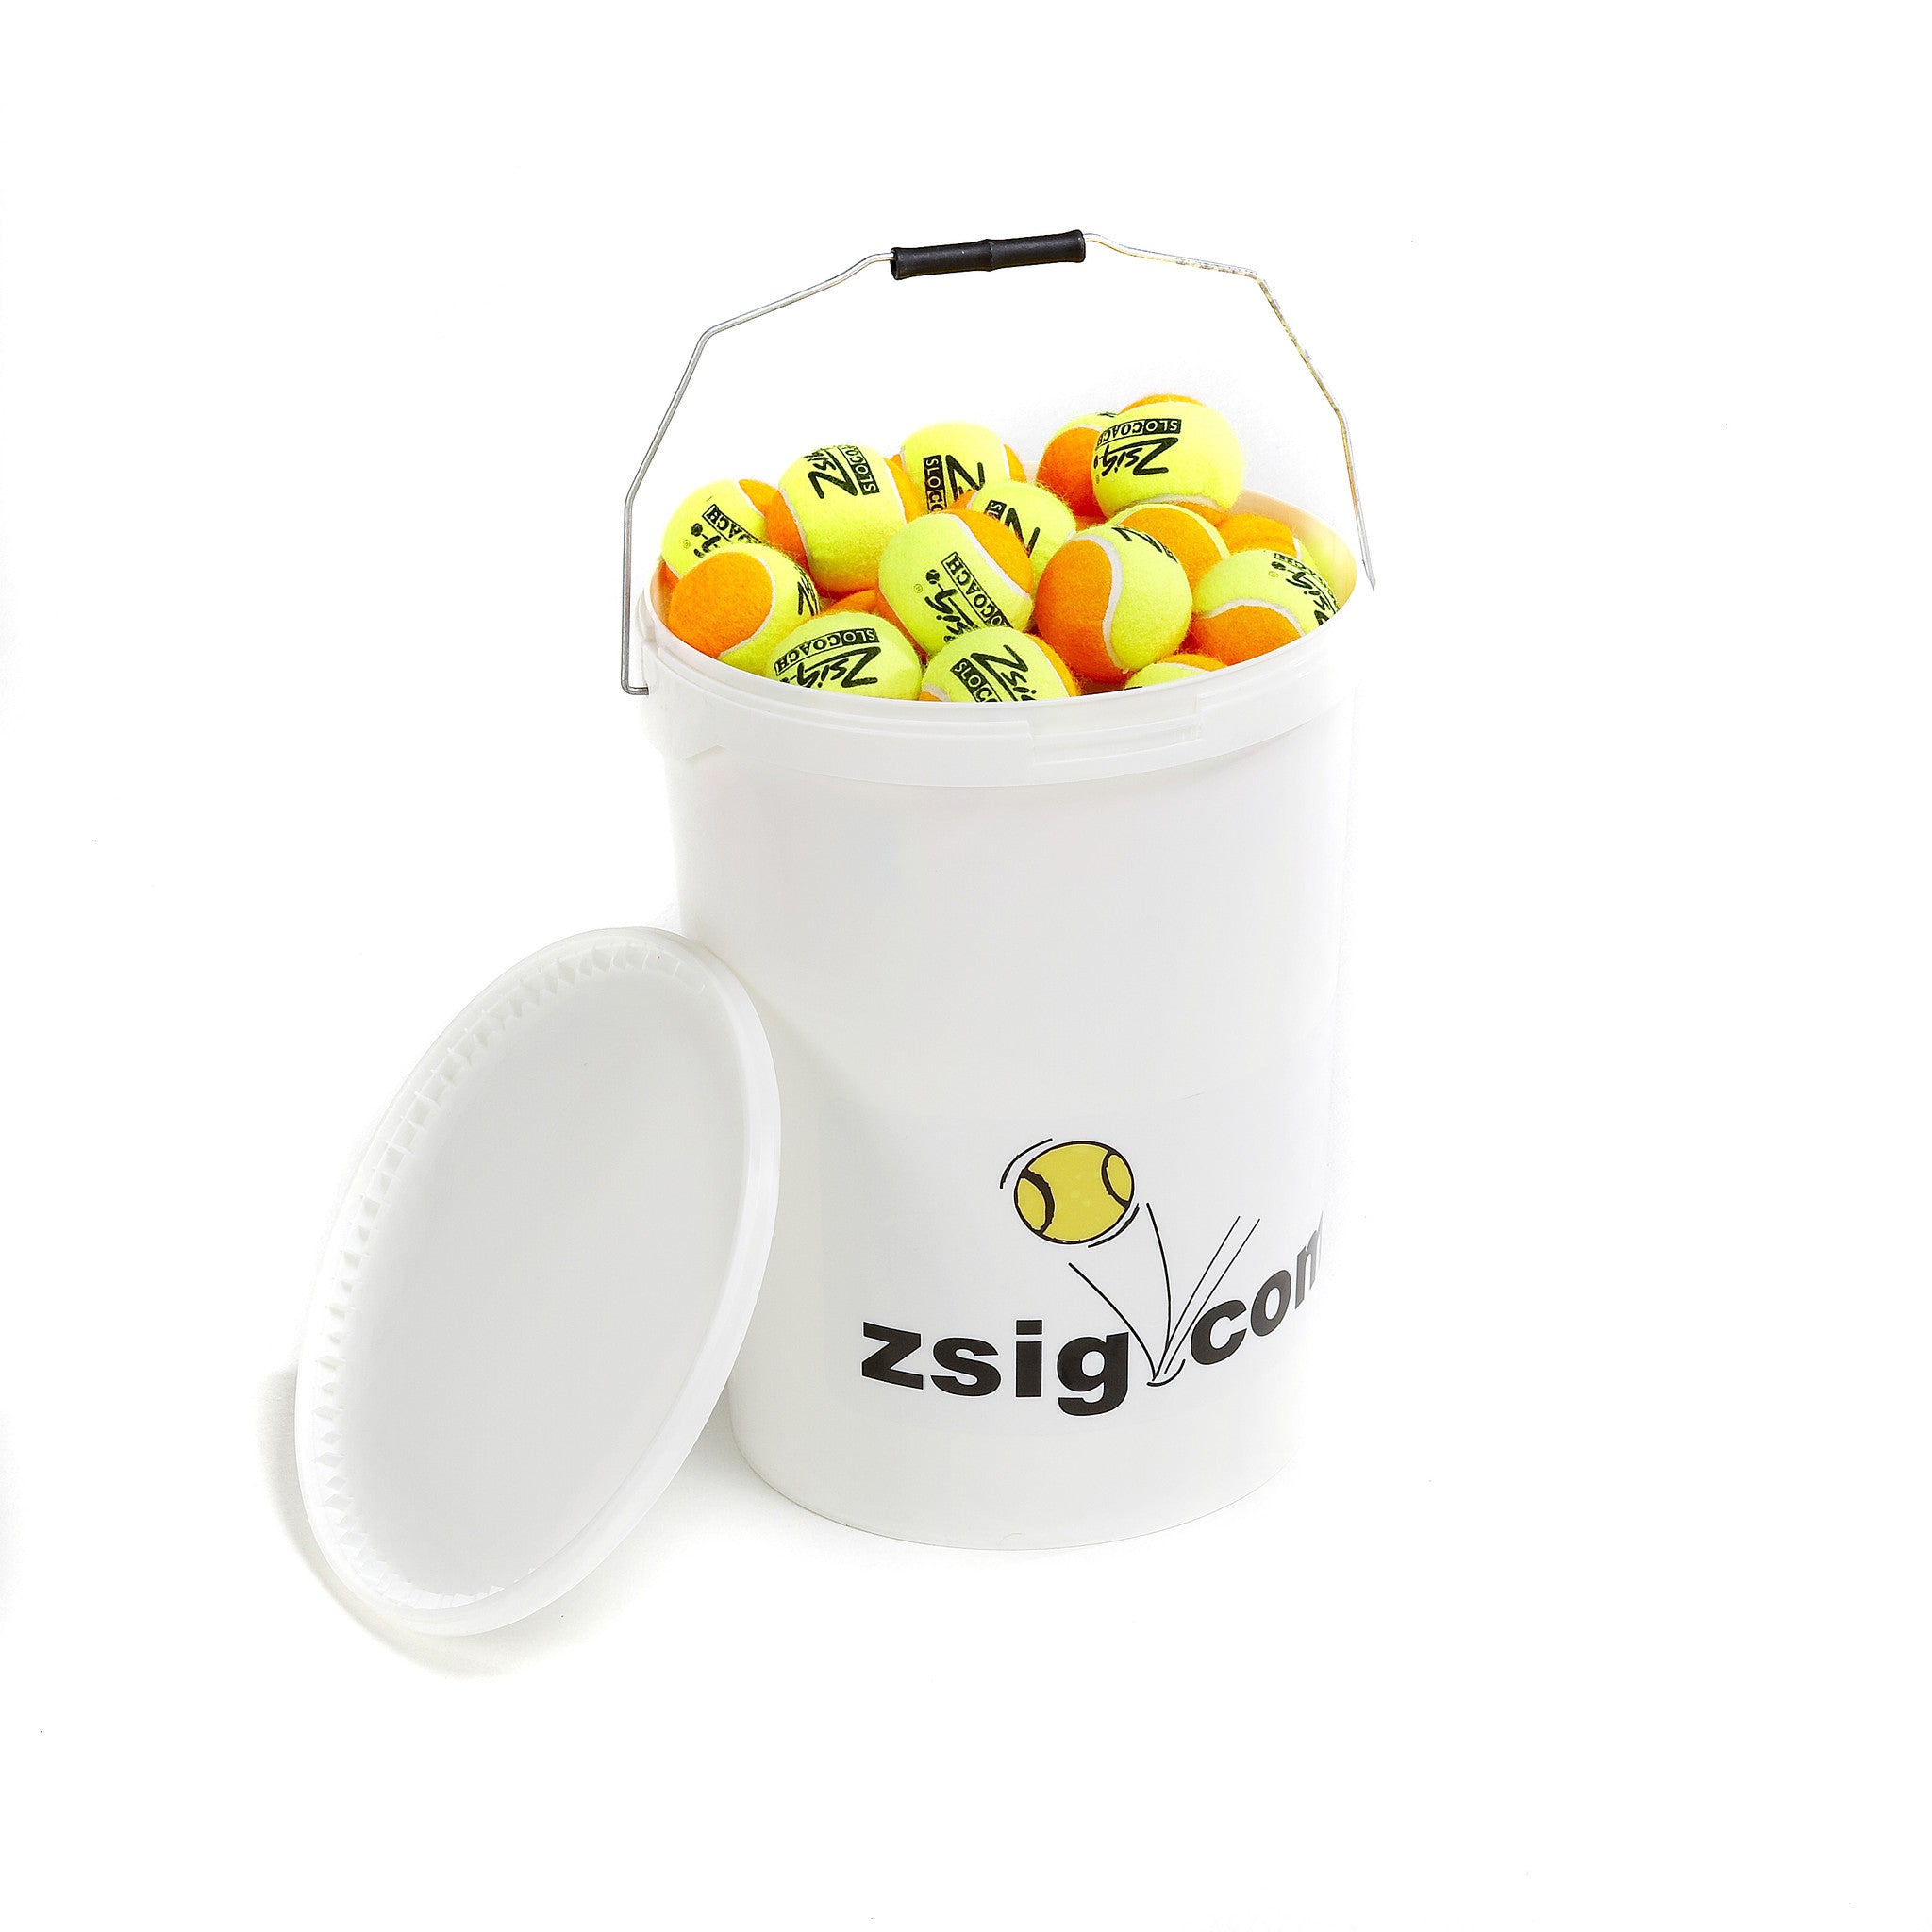 Mini Tennis Balls Zsig Slocoach Orange Bucket of 8 dozen balls